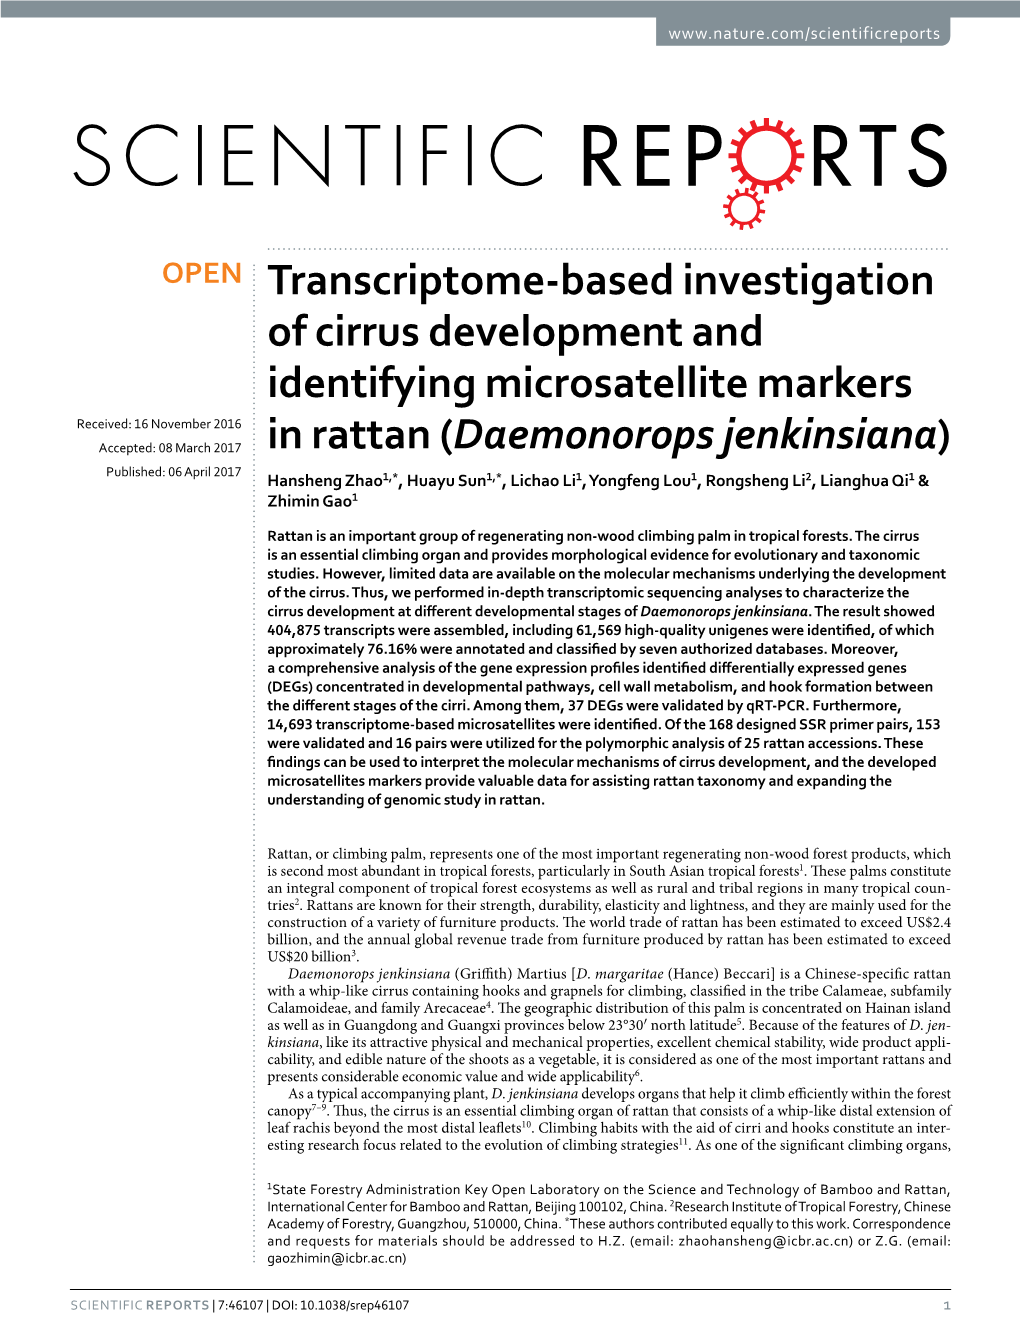 Transcriptome-Based Investigation of Cirrus Development And